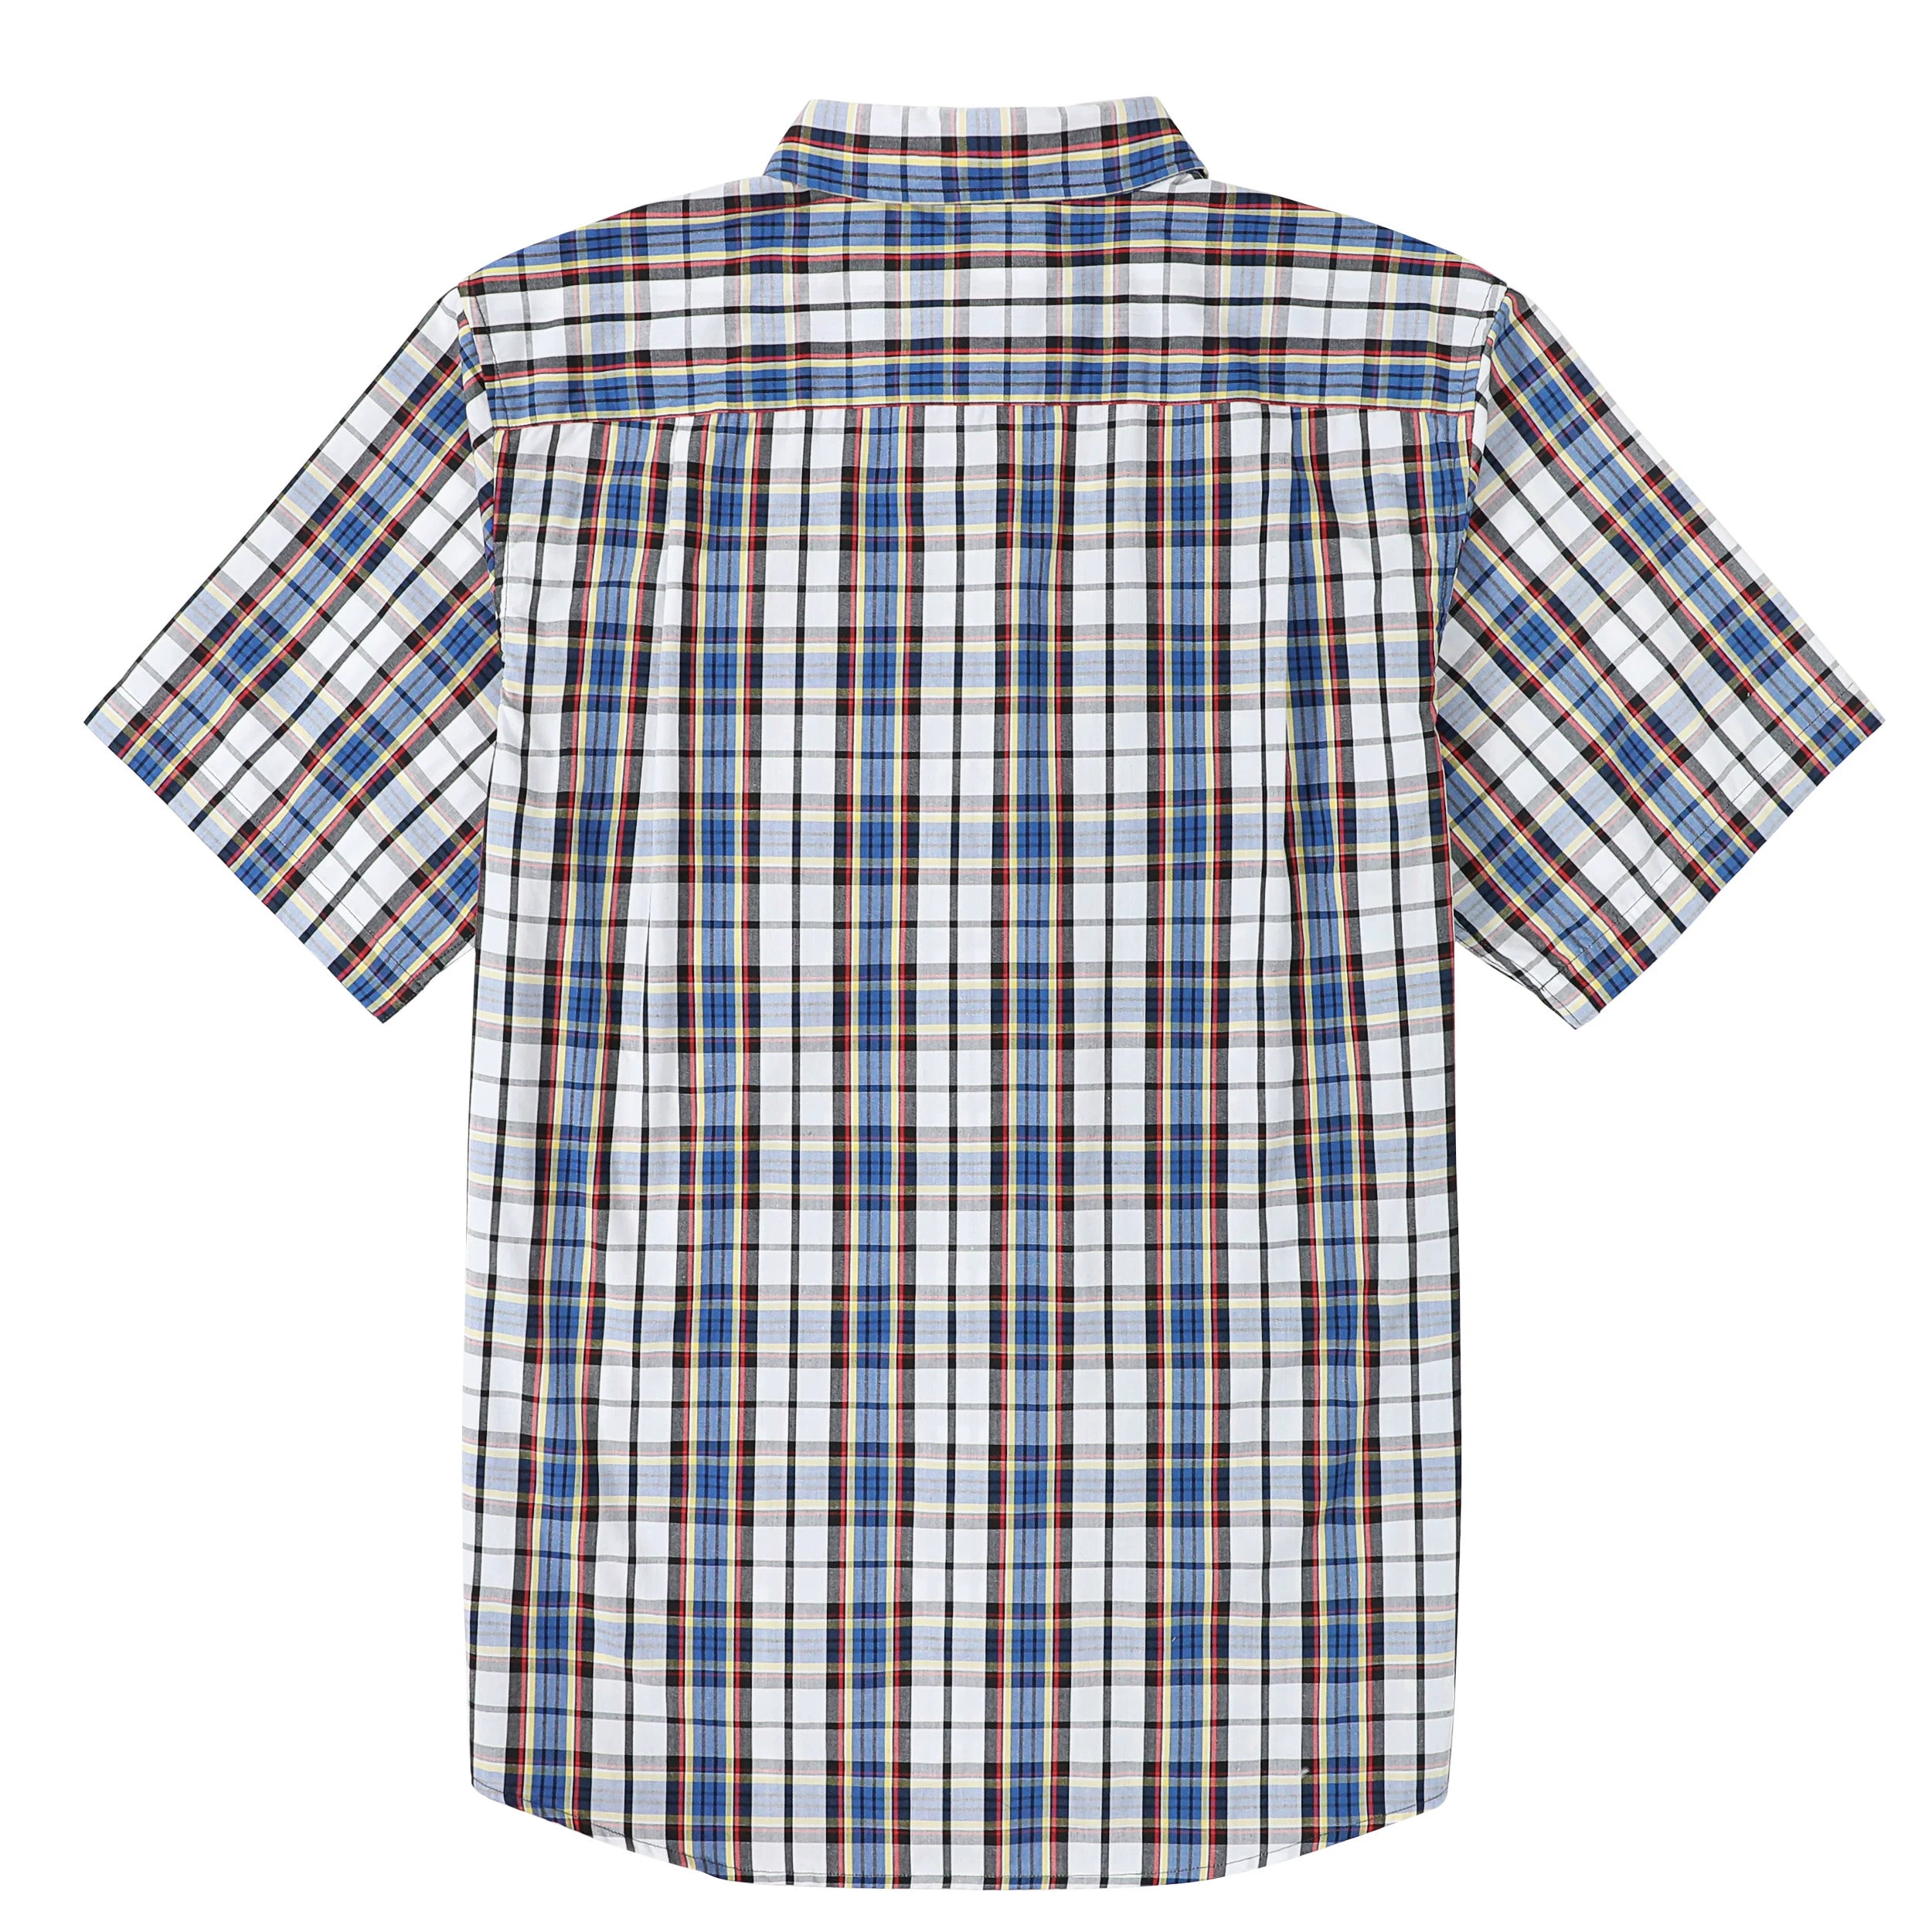 Dubinik® Mens Short Sleeve Button Down Shirts Summer Vintage Short Sleeve Button Down Men Lightweight Men's Casual Shirts#51009